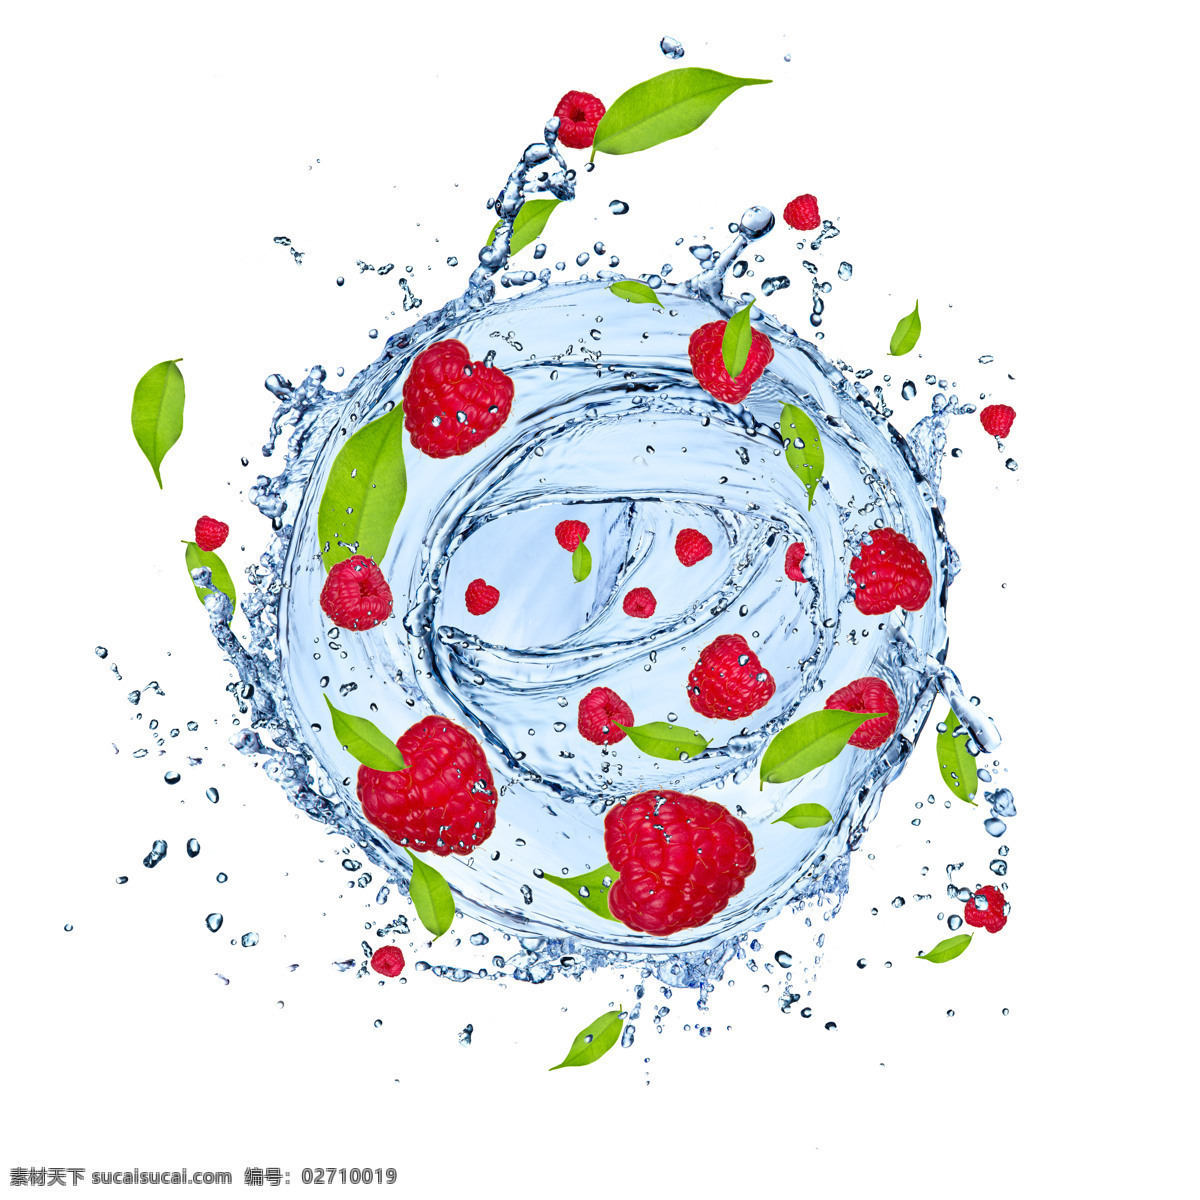 红色 草莓 动感 水波 旋涡 水花 波浪 水珠 水滴 水泡 溅起的水花 溅起来的水花 阳光 空气 水 清透 干净 水果 红色的 原生态水果 水素材 水果蔬菜 餐饮美食 蔬菜图片